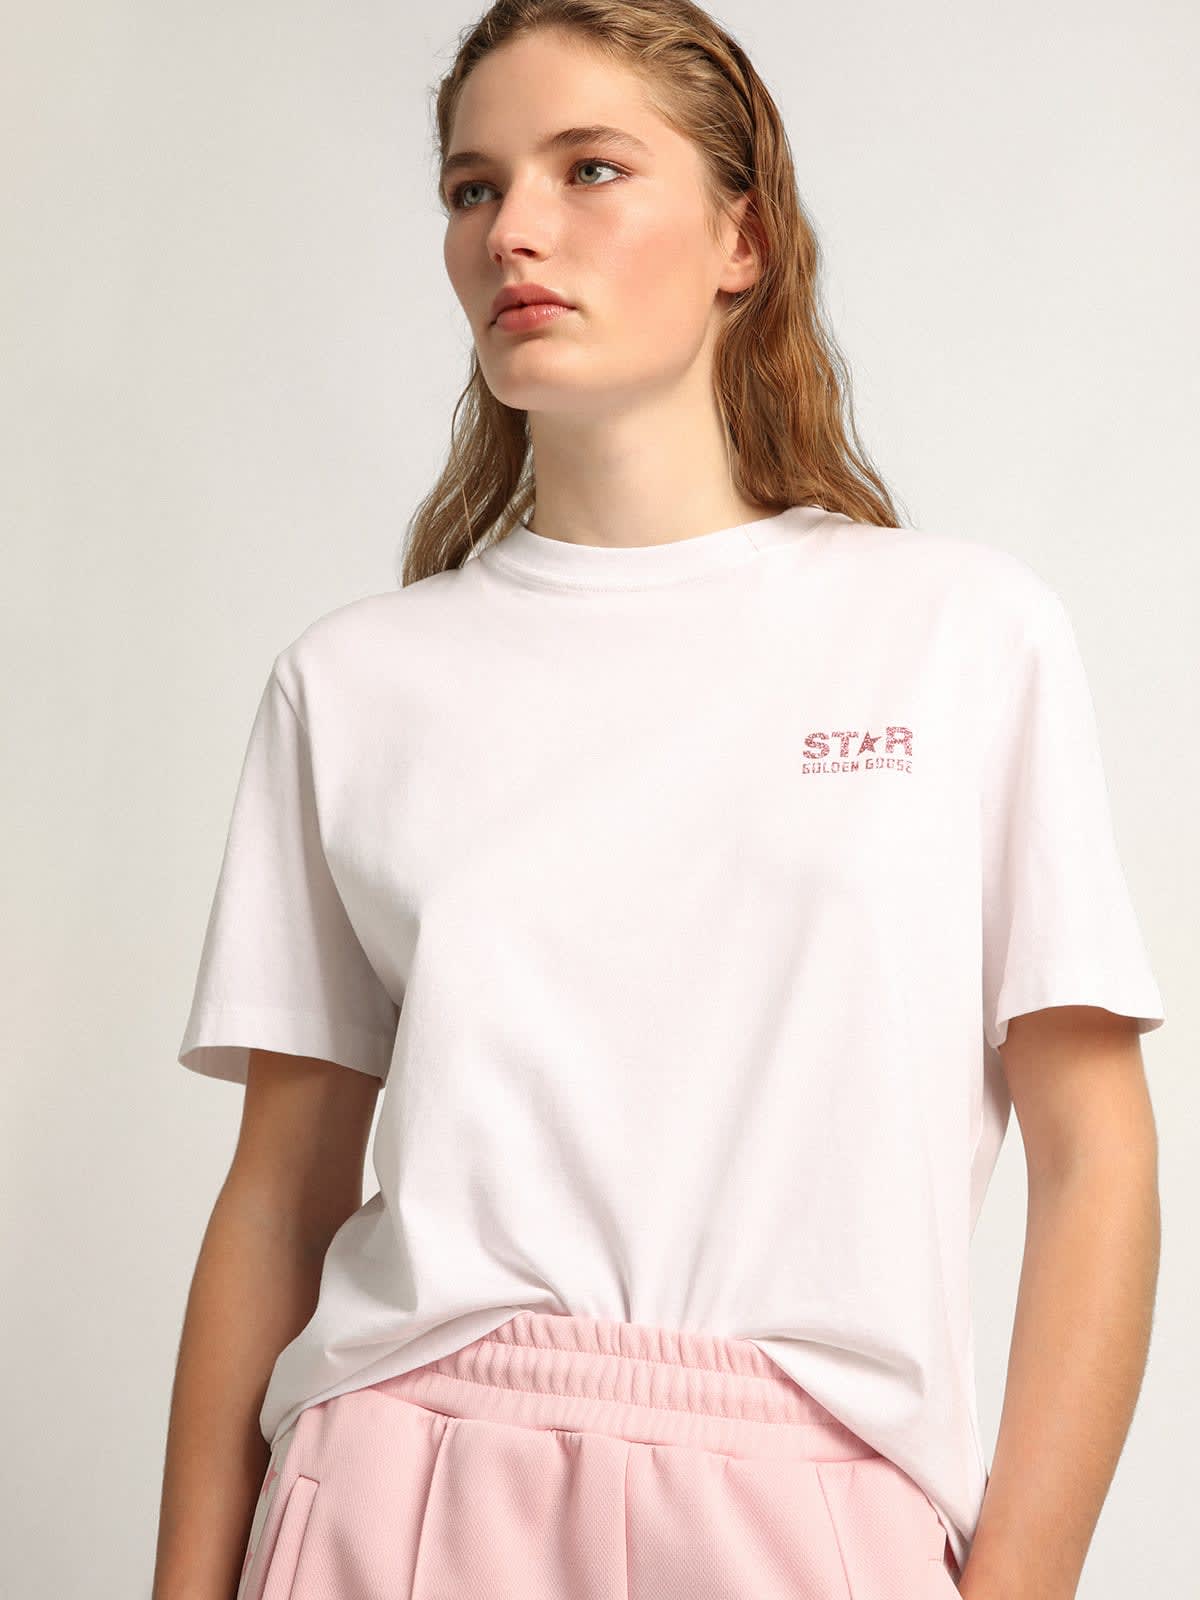 Golden Goose - T-shirt bianca Collezione Star con logo e stella in glitter rosa in 